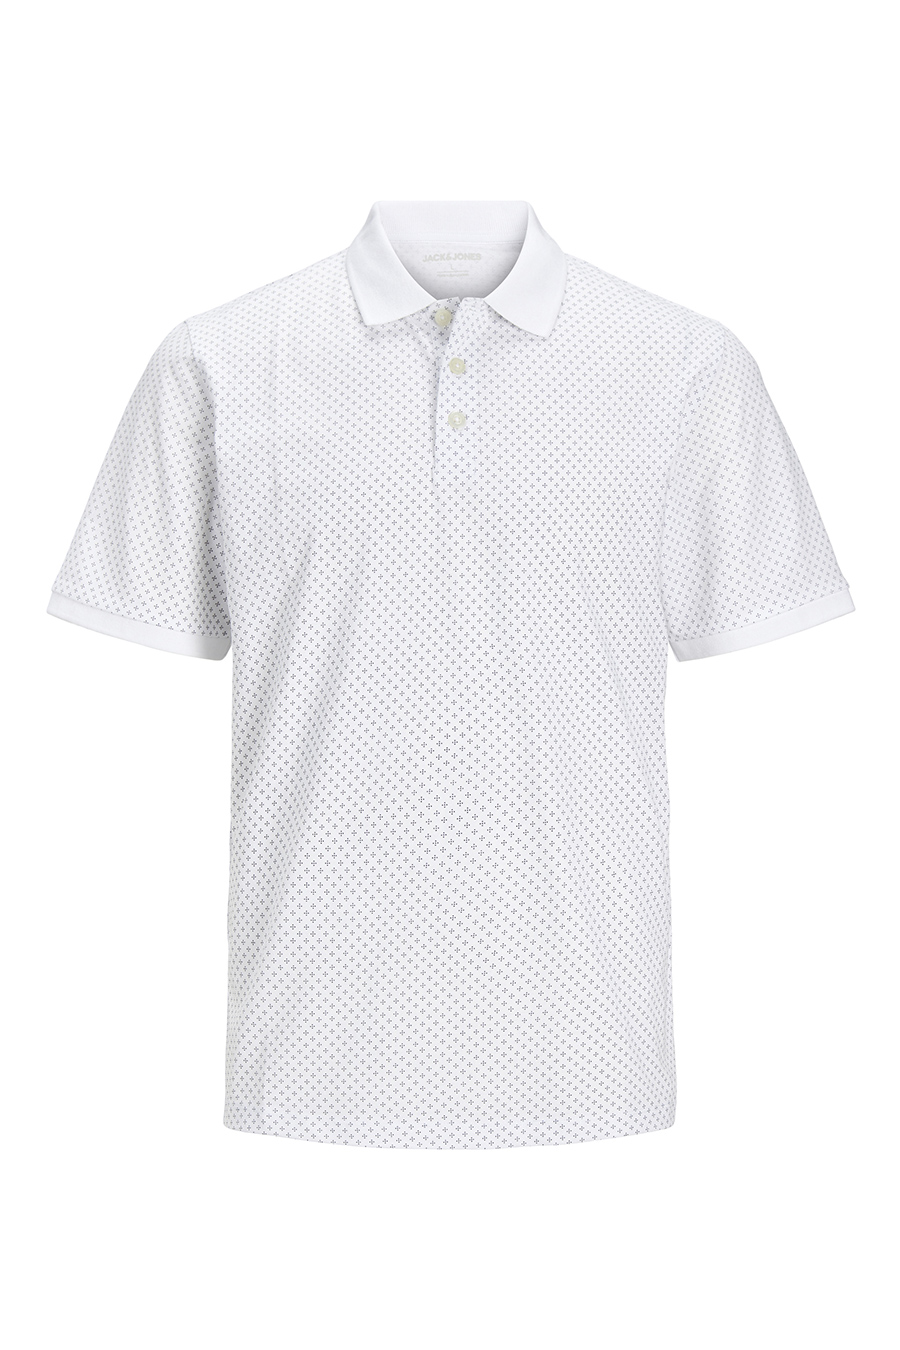 Polo marškinėliai JACK & JONES 12249286-White